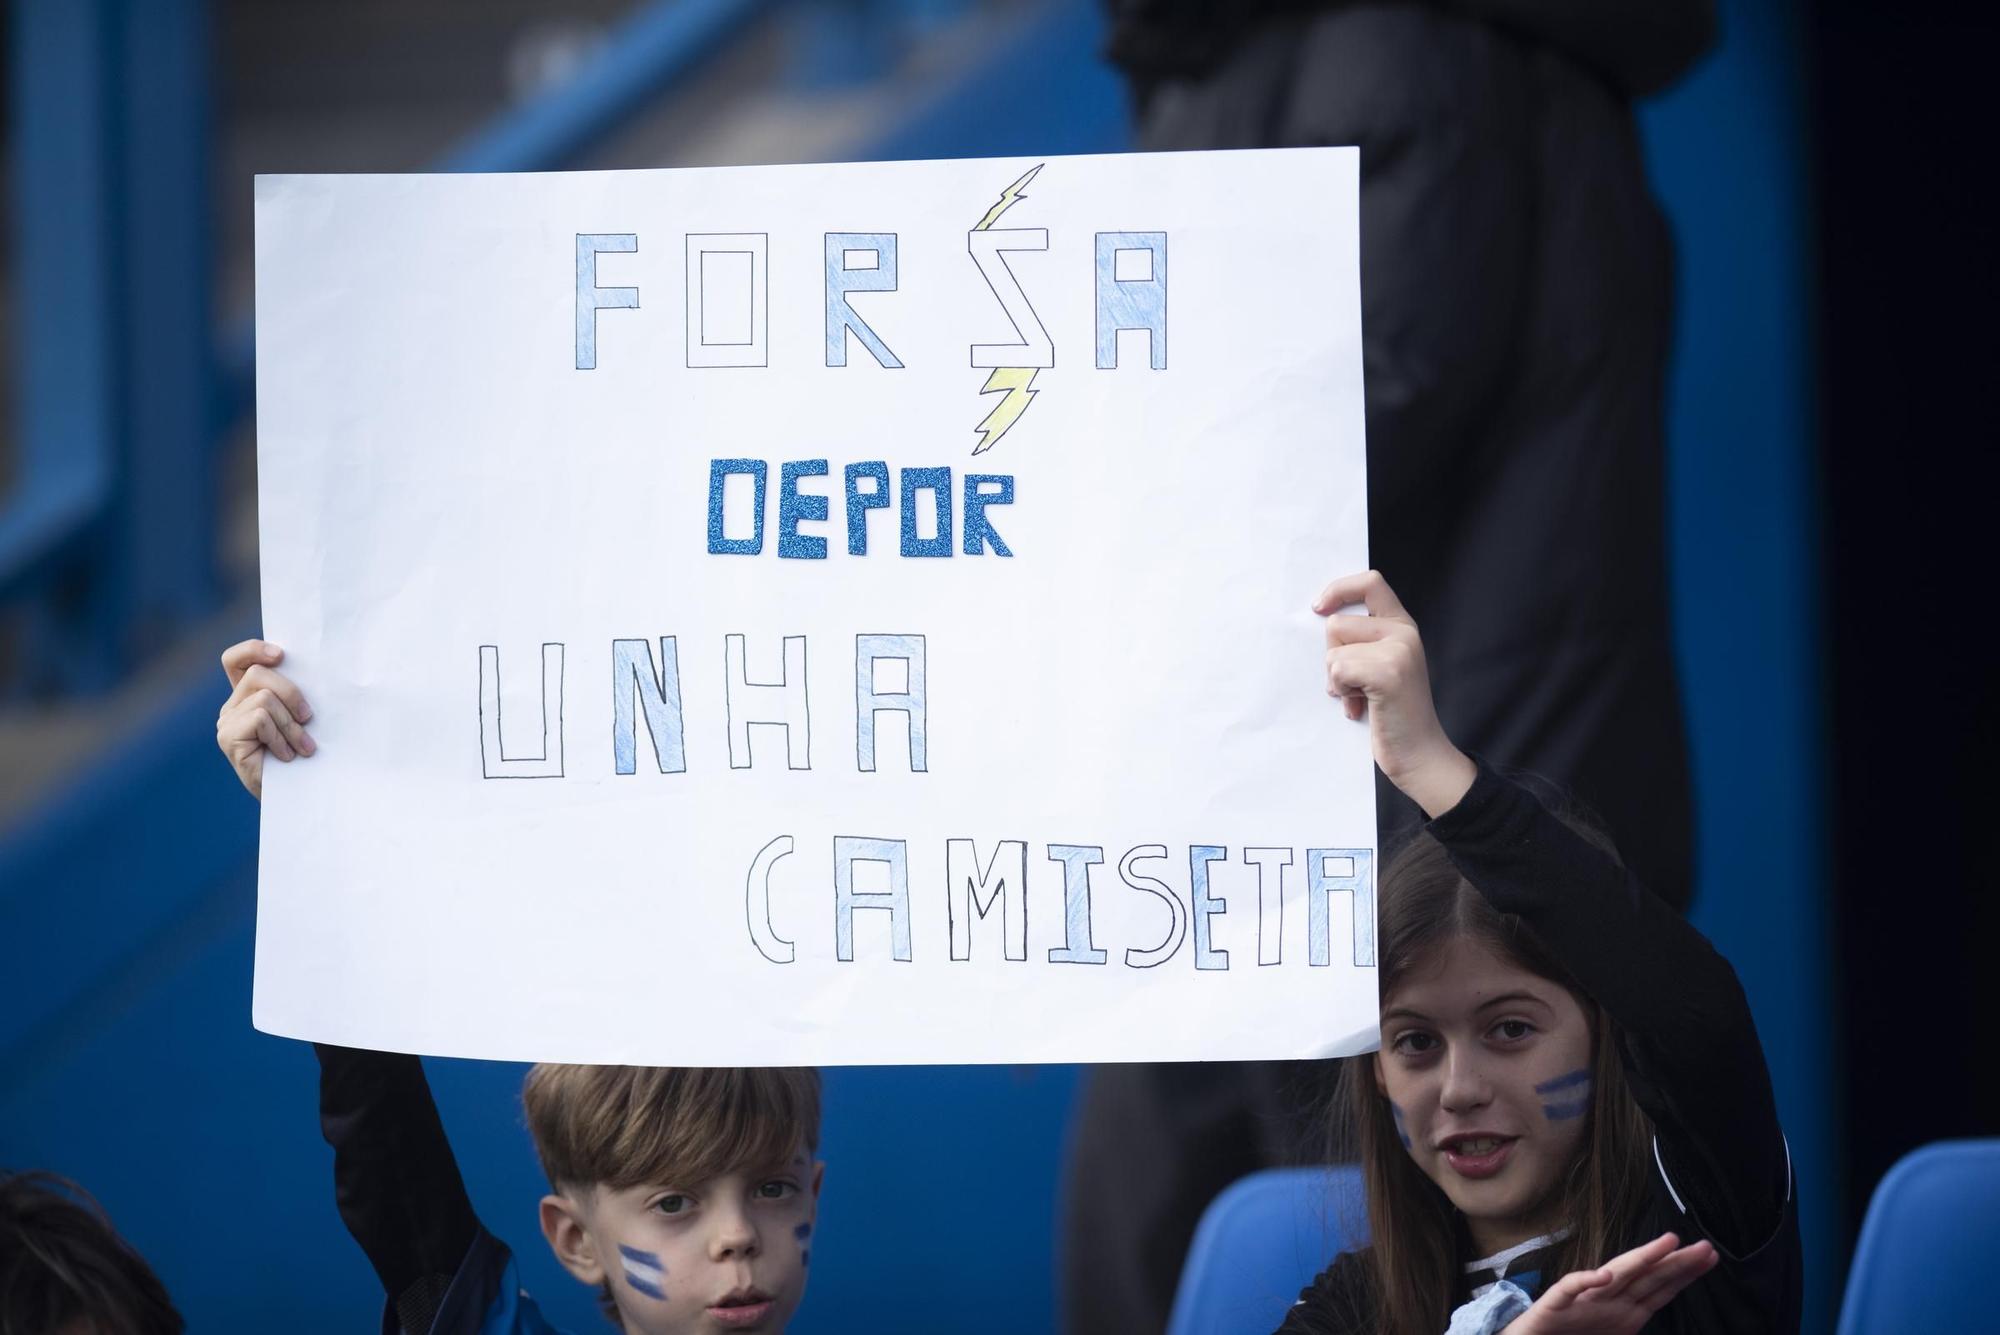 A Coruña demuestra que el fútbol femenino sí interesa